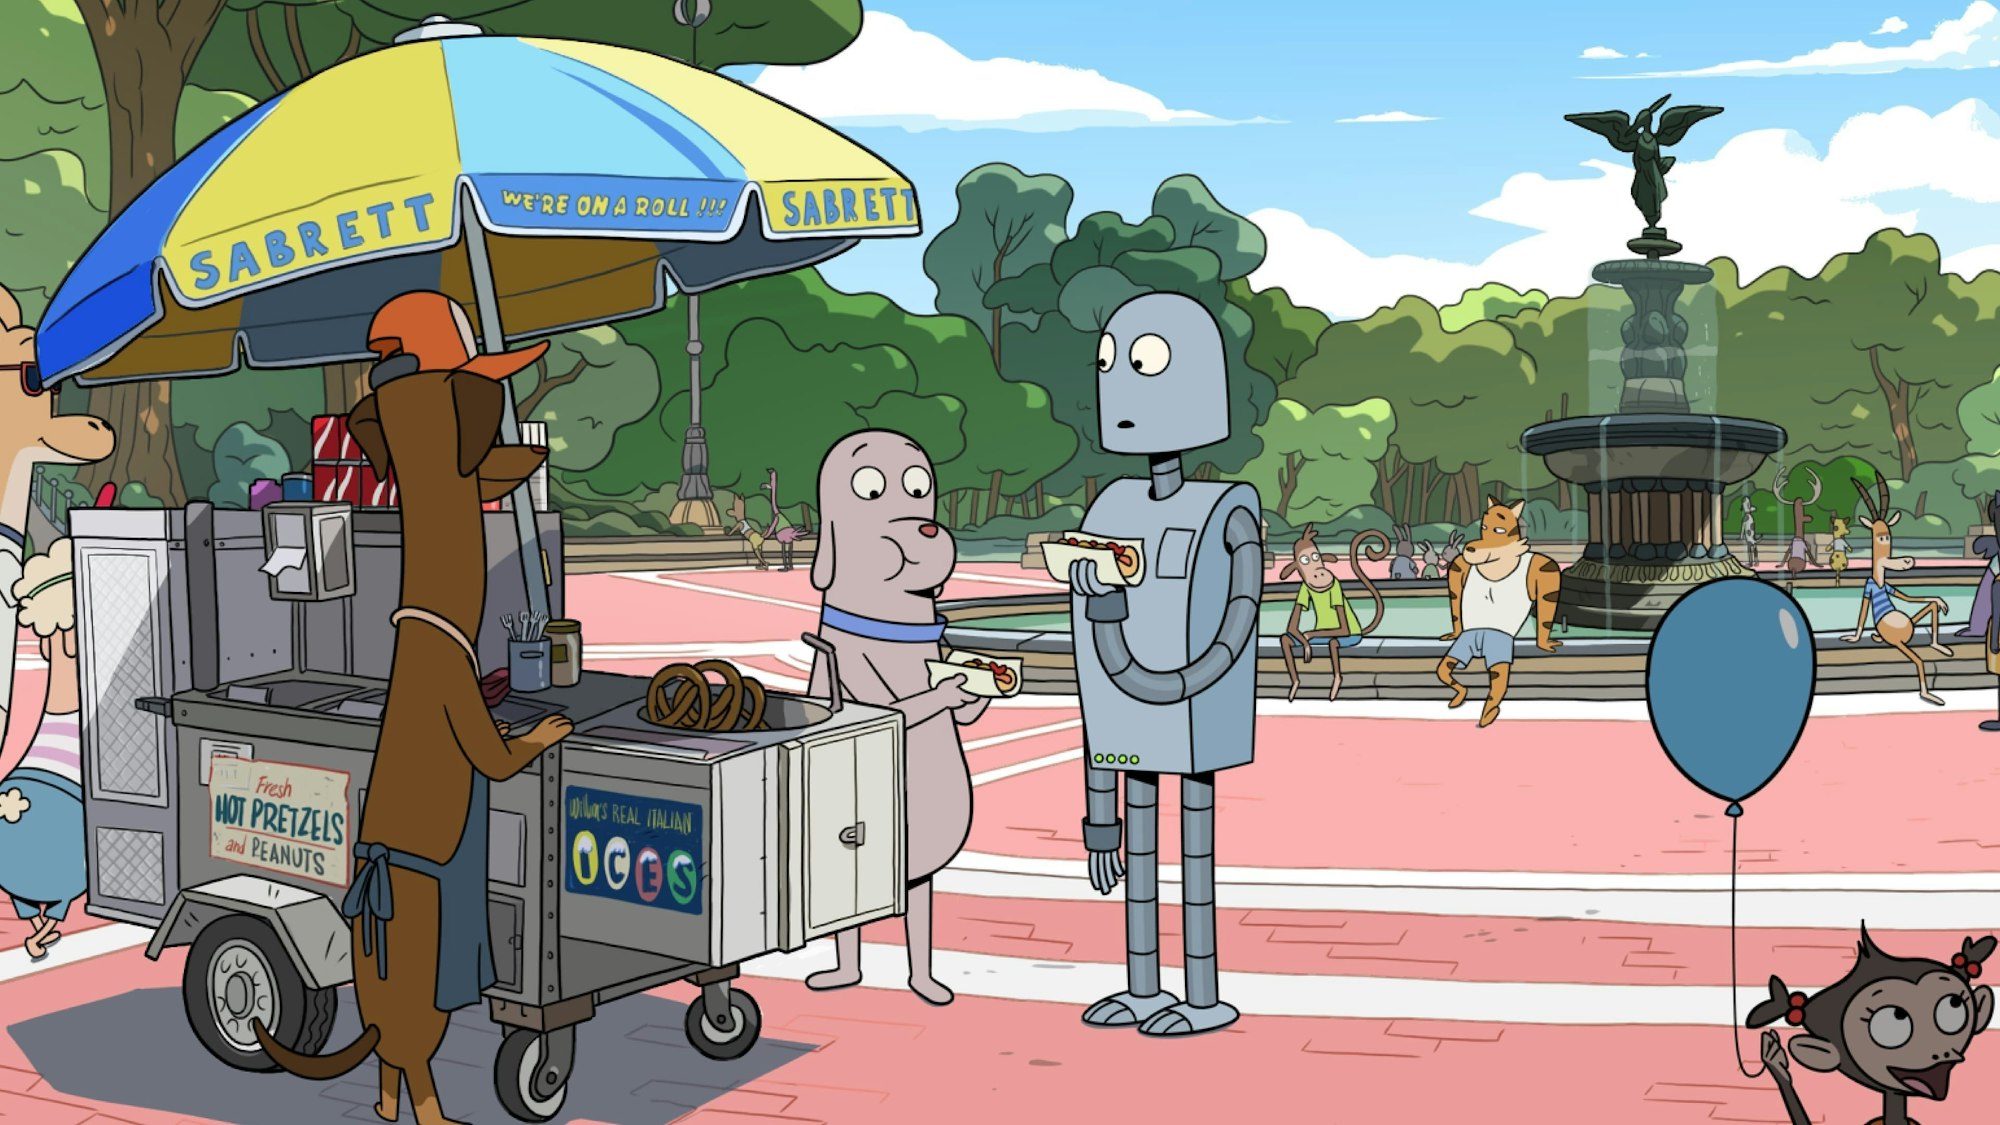 Das Bild zeigte die cartoonhafte Szene von „Robot Dreams“. Ein Hund und ein Roboter holen sich an einem Stand einen Hotdog. Im Hintergrund ein großer Brunnen und weitere vermenschlichte Tiere.